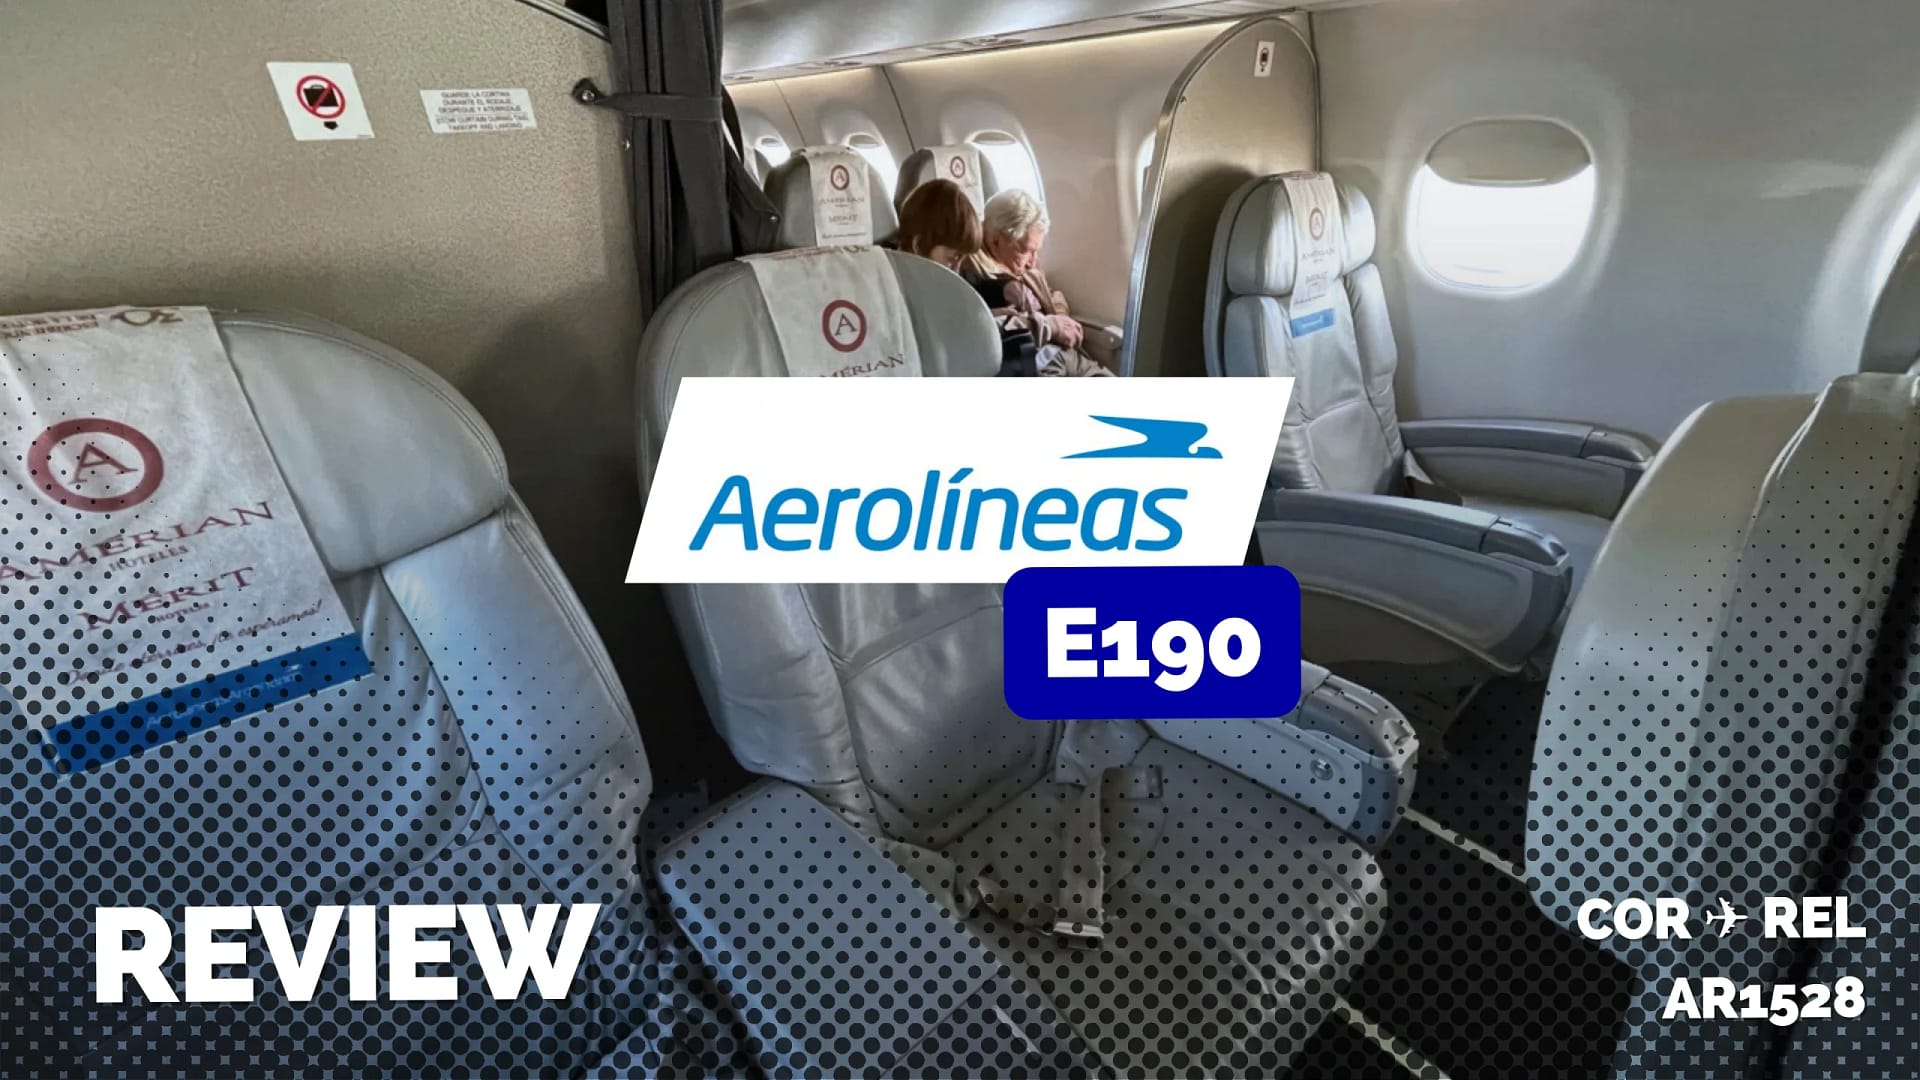 Aerolíneas Argentinas E190 Club Economy in 2023 (Review)